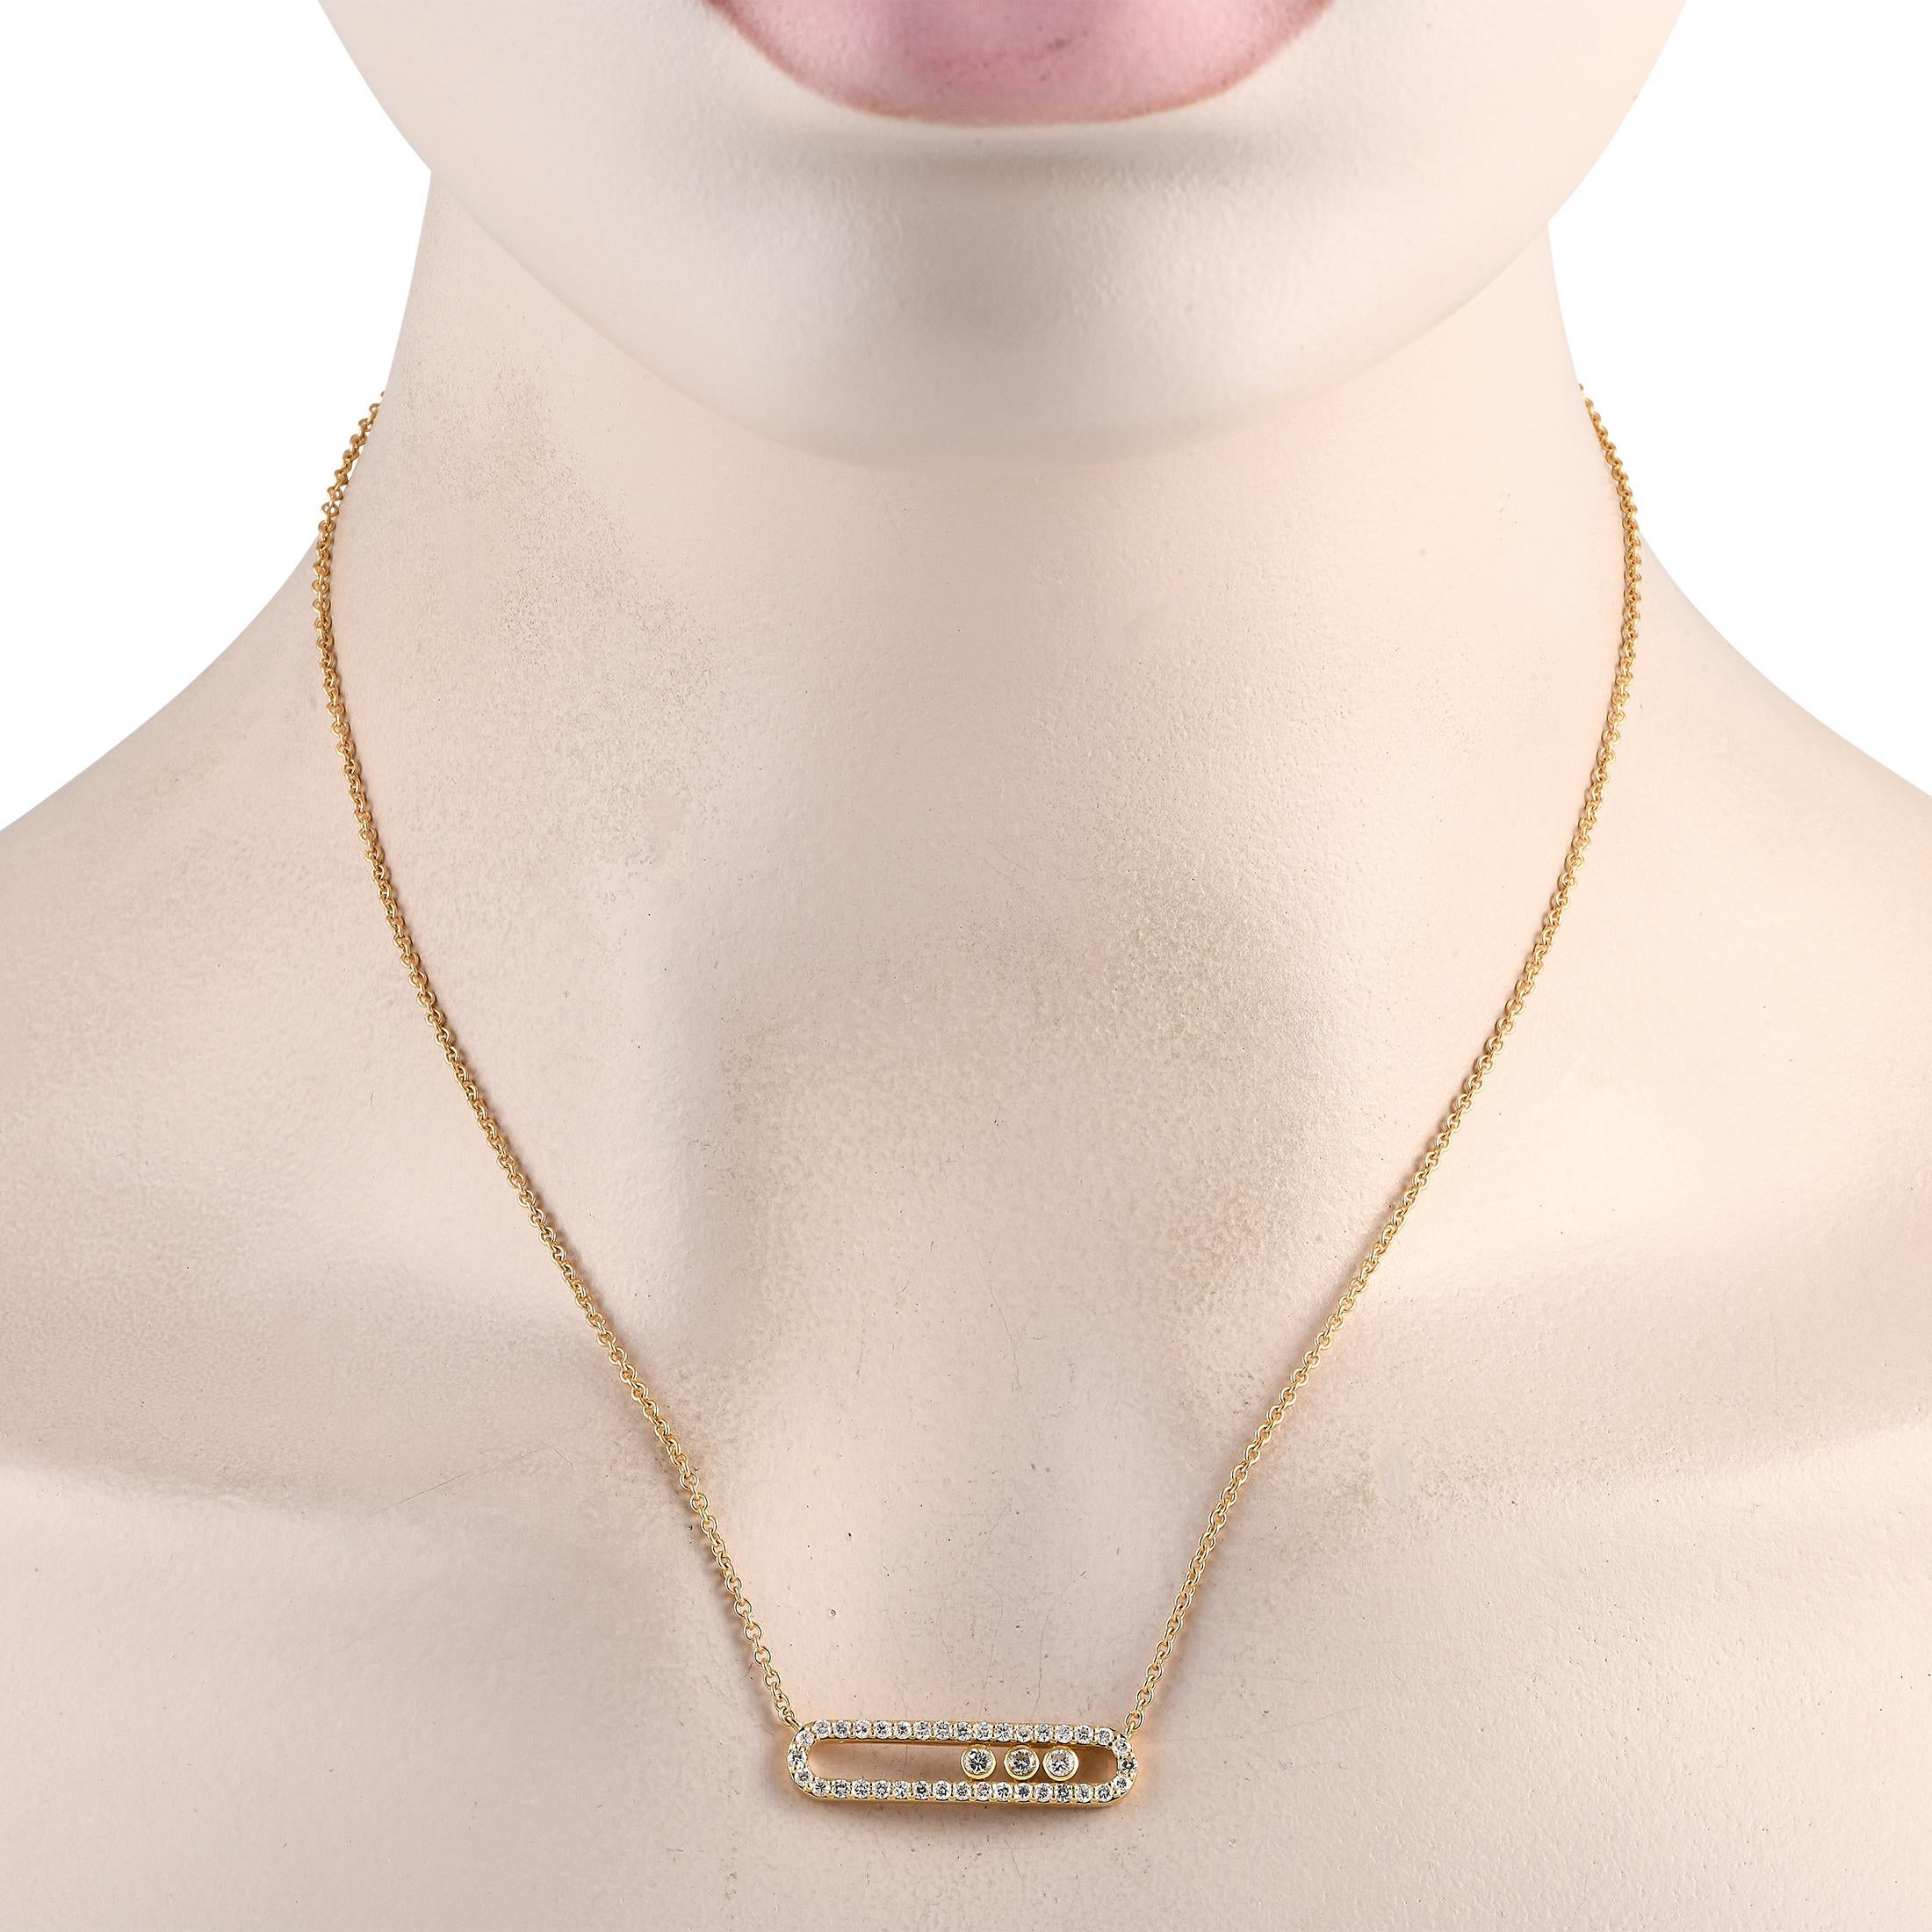 Malgré son design dynamique, ce collier opulent est idéal pour être porté au quotidien. Le pendentif élégant et sophistiqué est orné de diamants étincelants totalisant 0,70 carats. Suspendu au centre d'une chaîne de 16